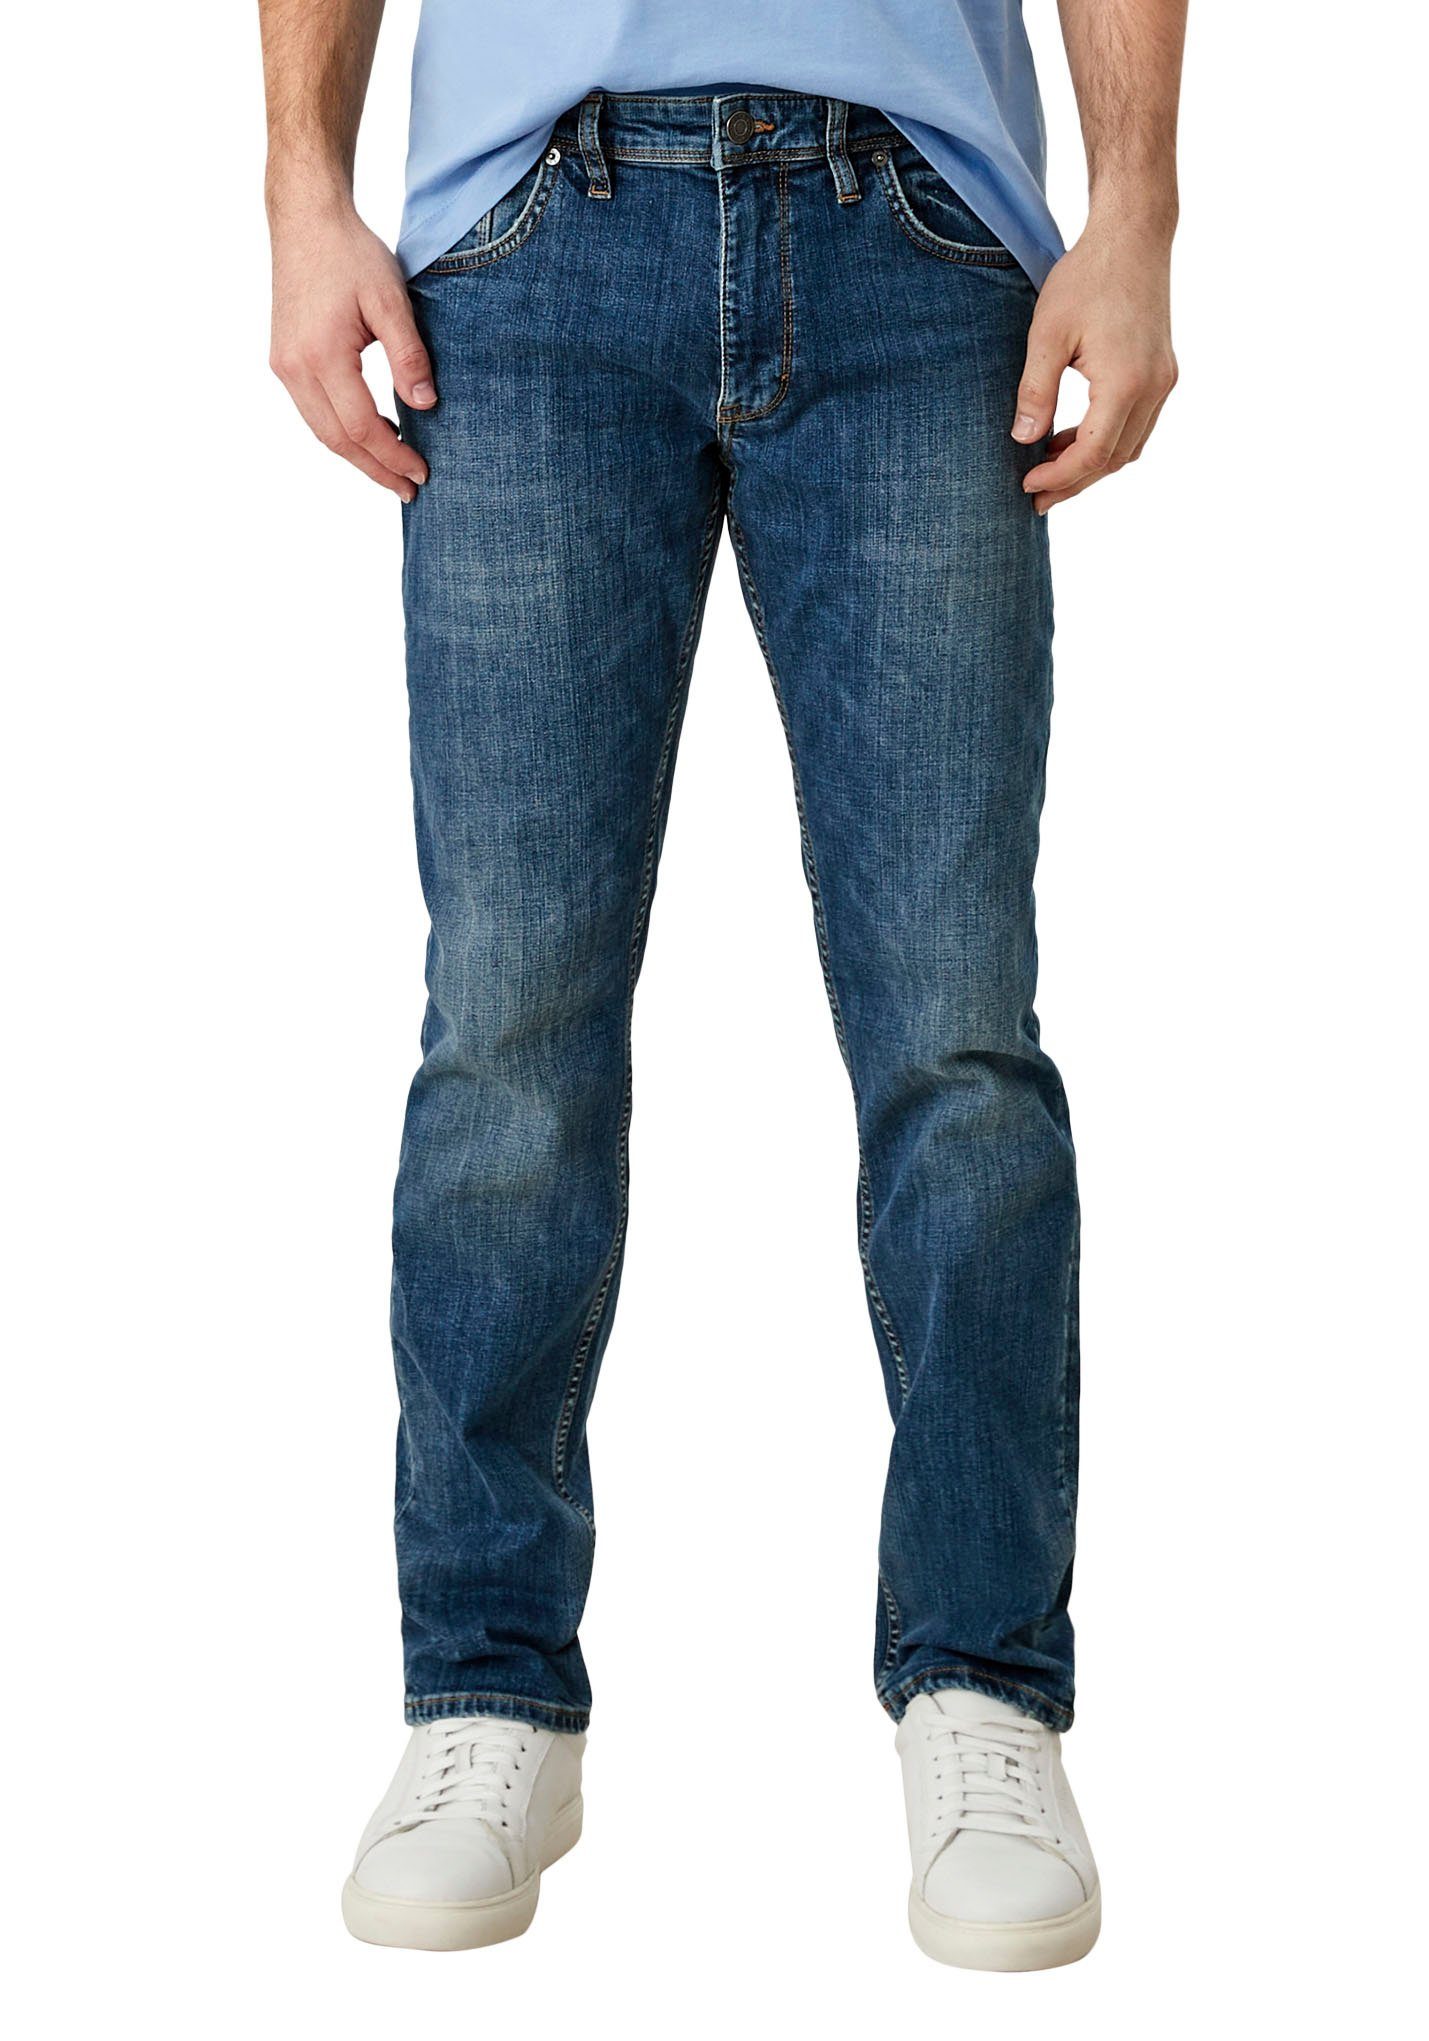 Waschung mit ozeanblau authentischer s.Oliver 5-Pocket-Jeans